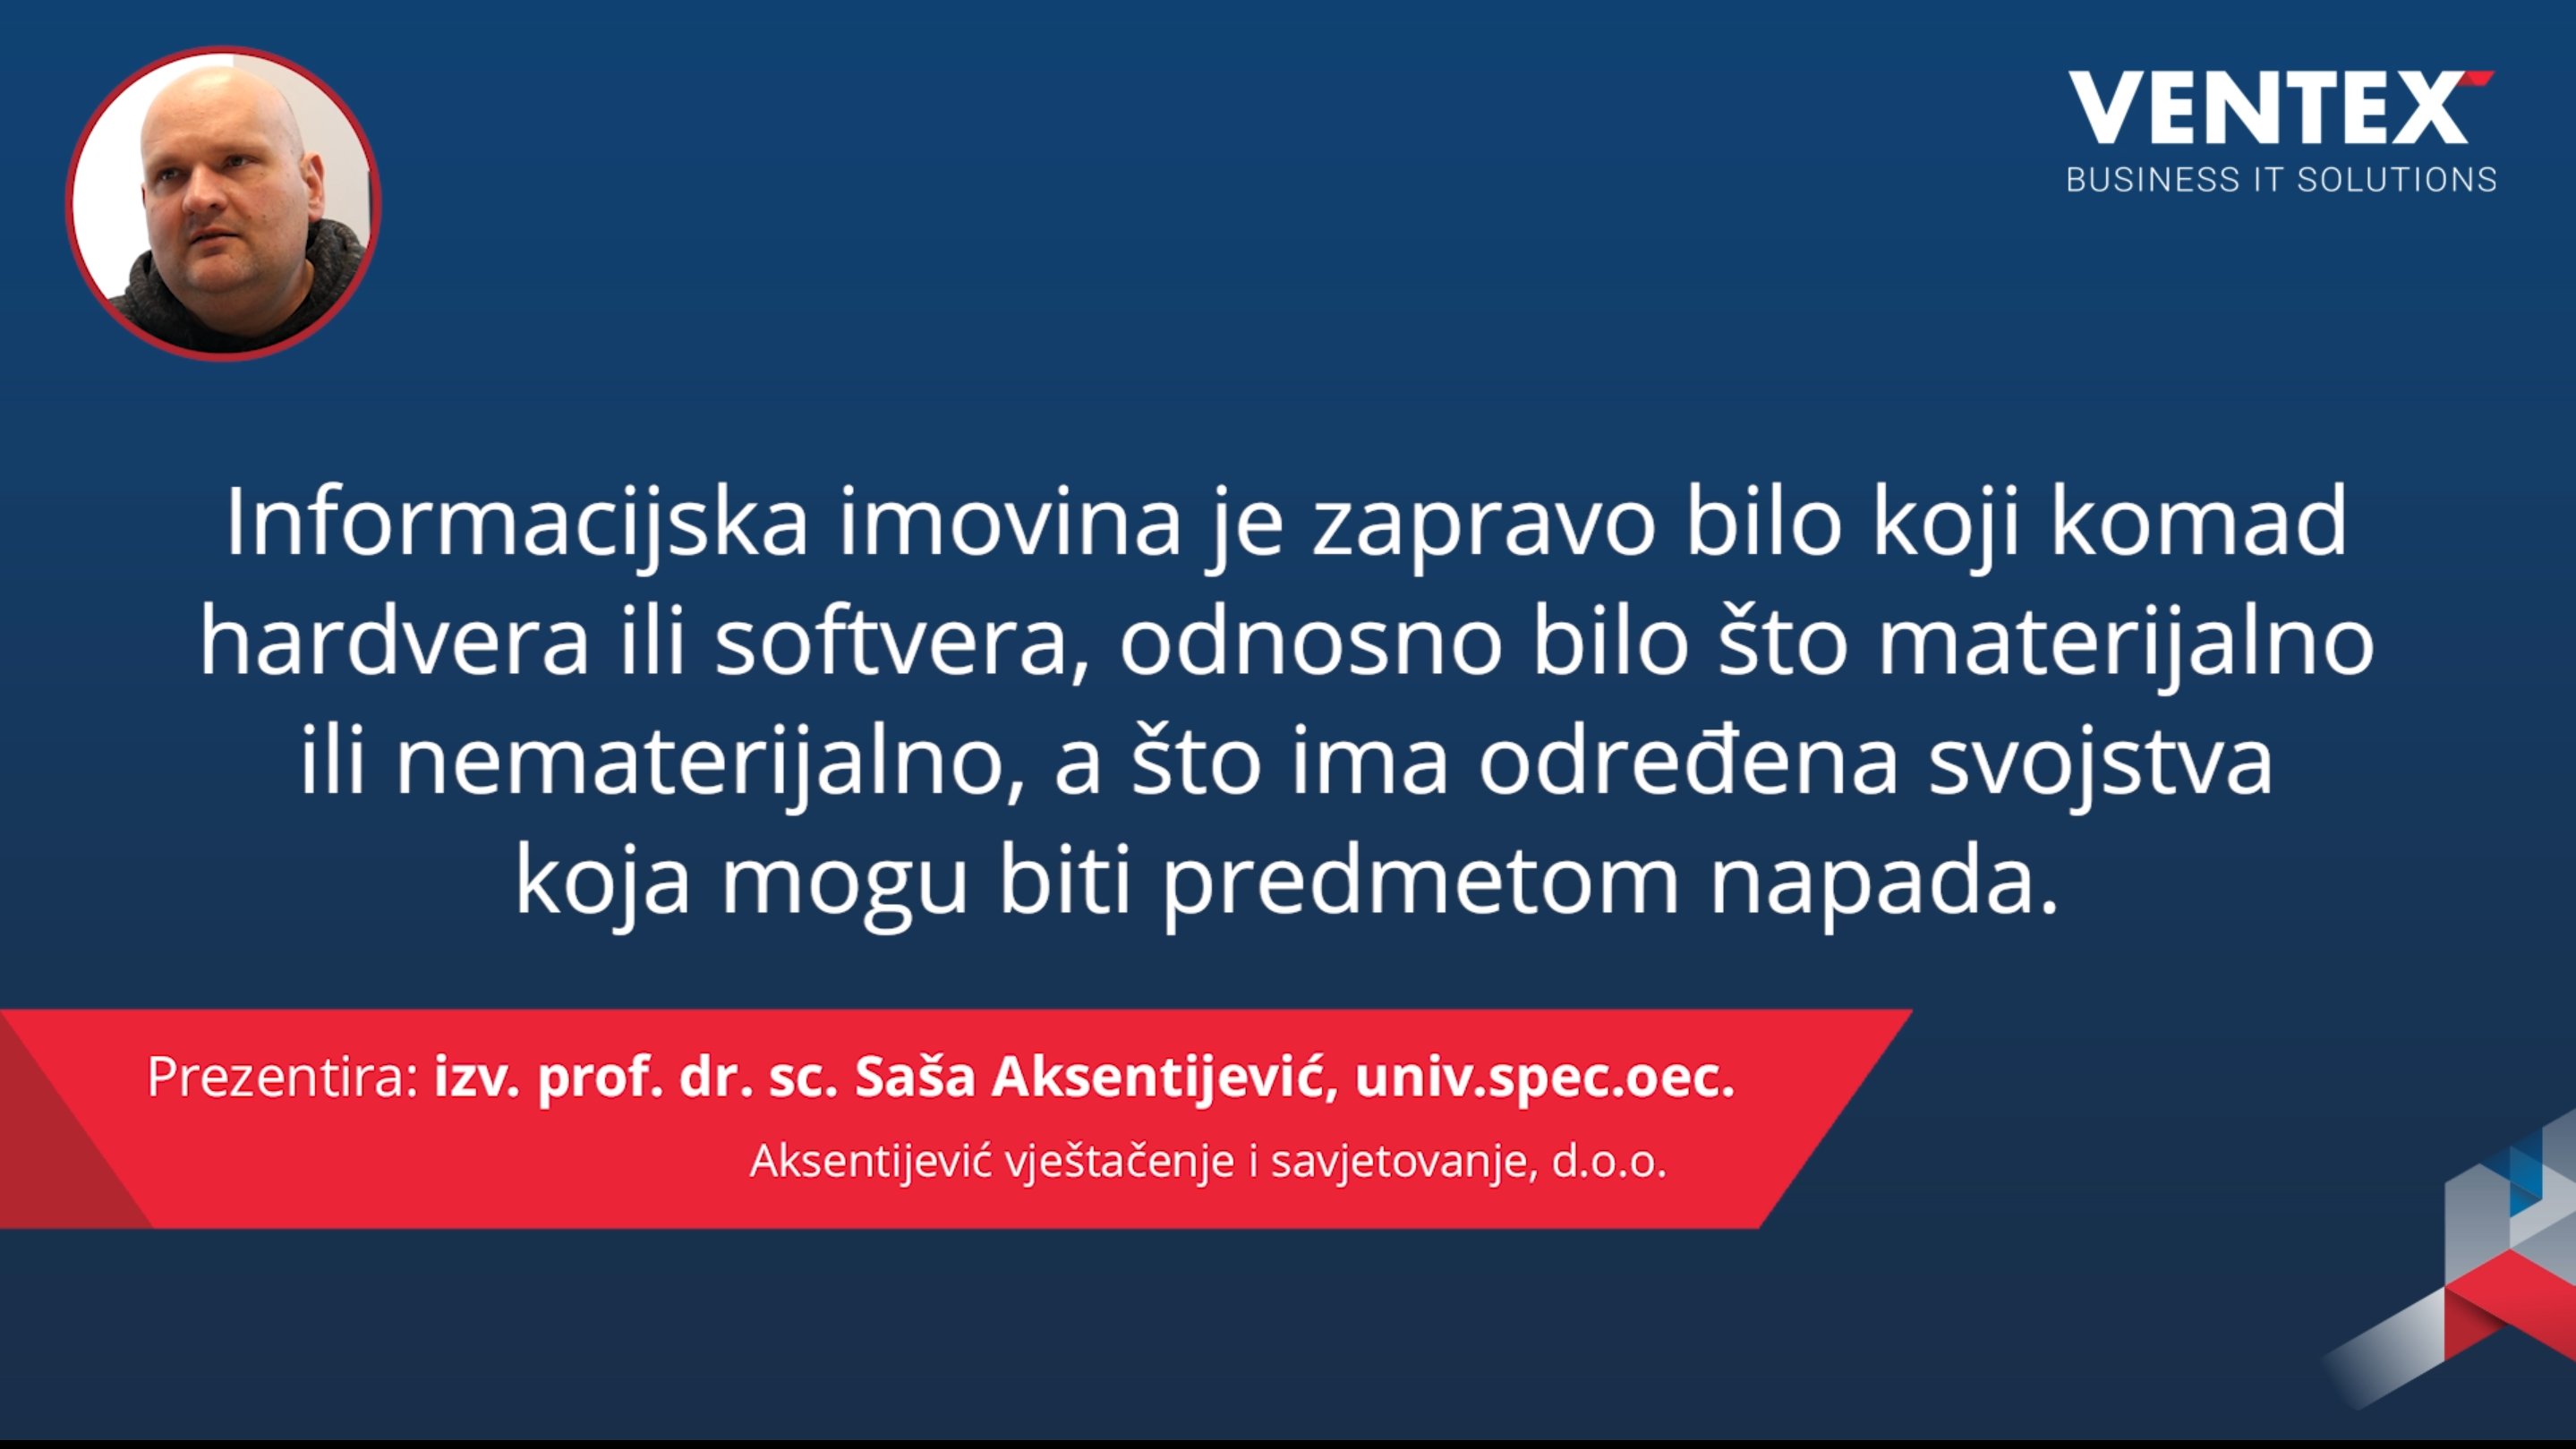 Isječak s predavanja izv. prof. dr. sc. Saše Aksentijevića, univ. spec. oec. o informacijskoj sigurnosti